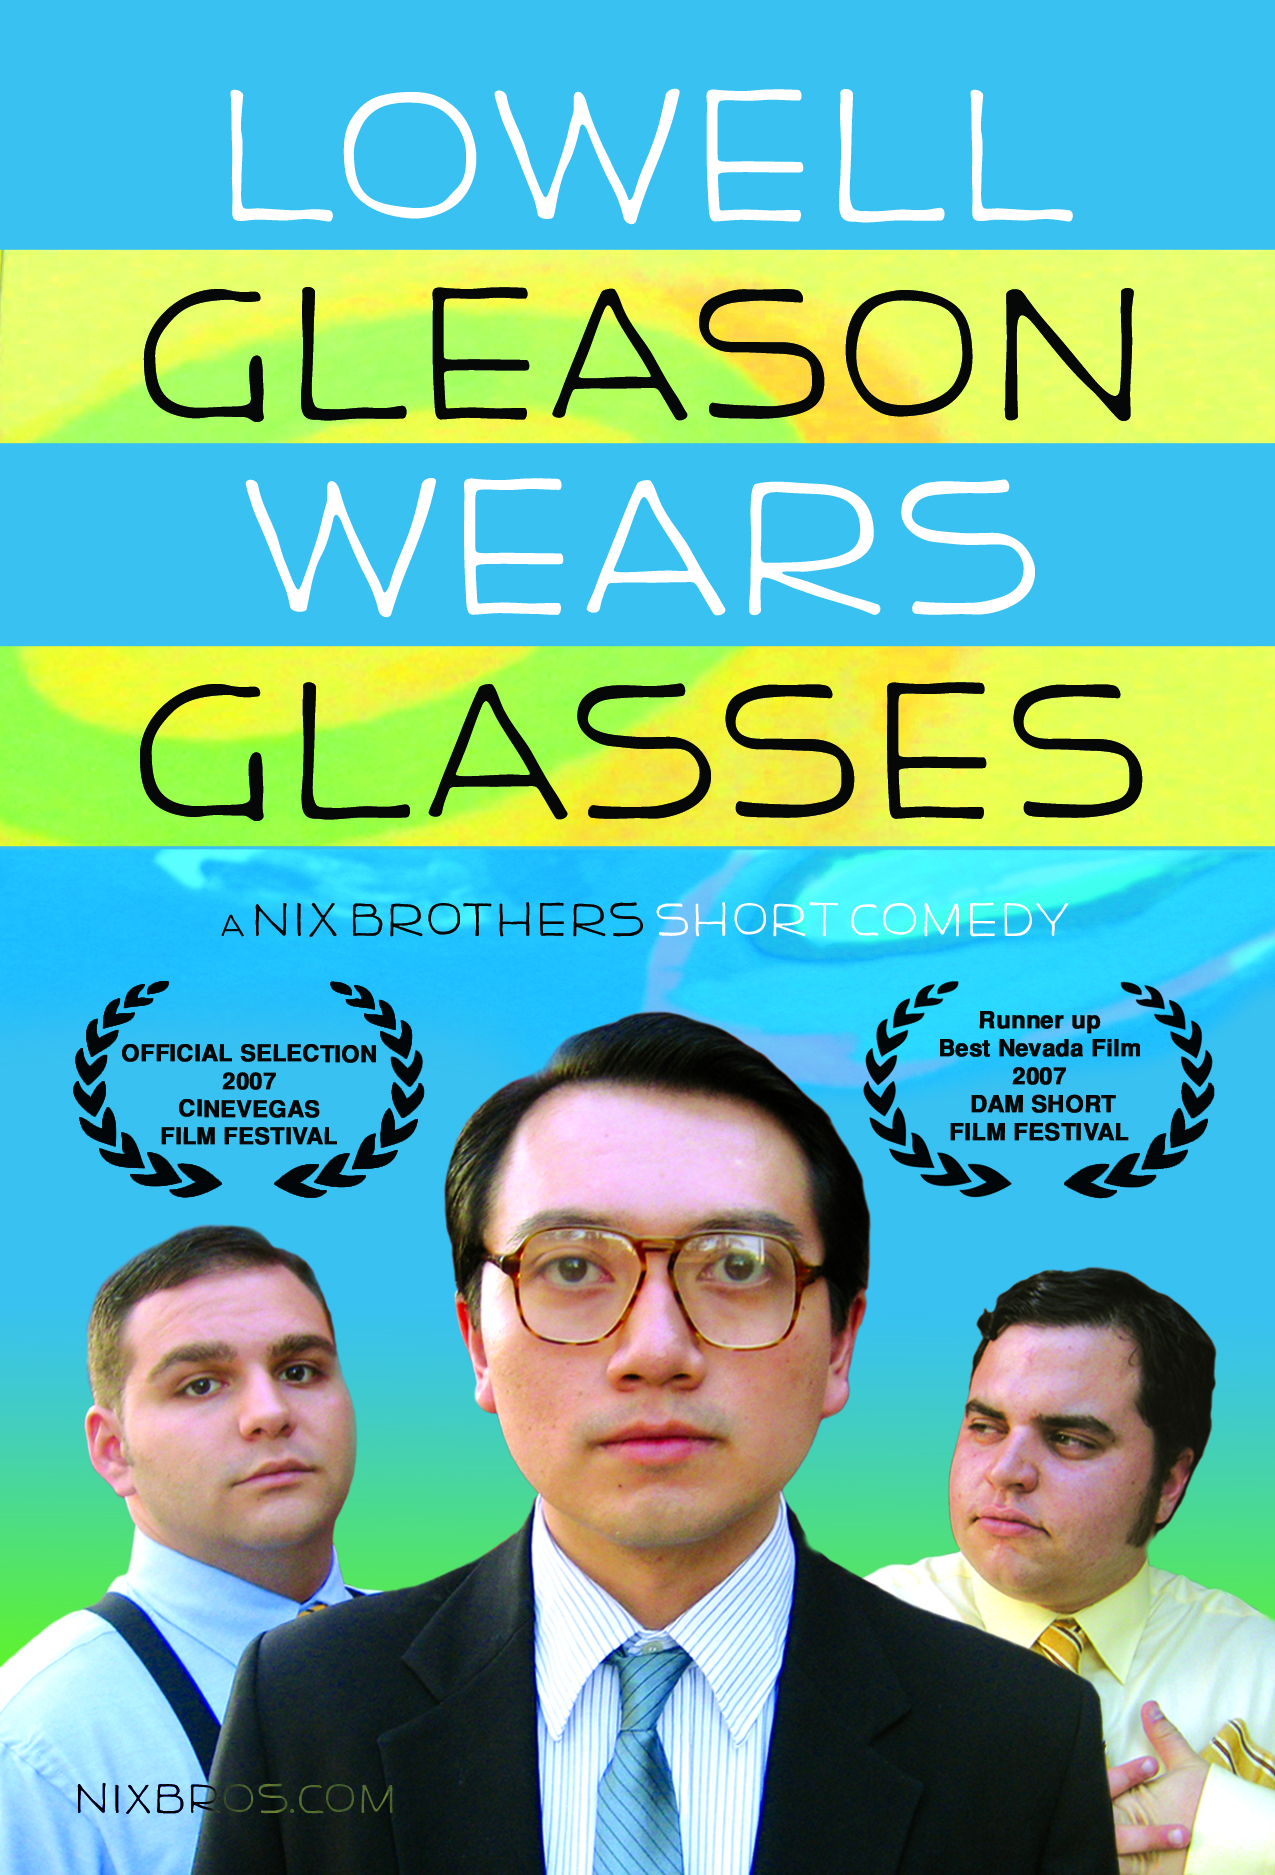 Lowell Gleason Wears Glasses